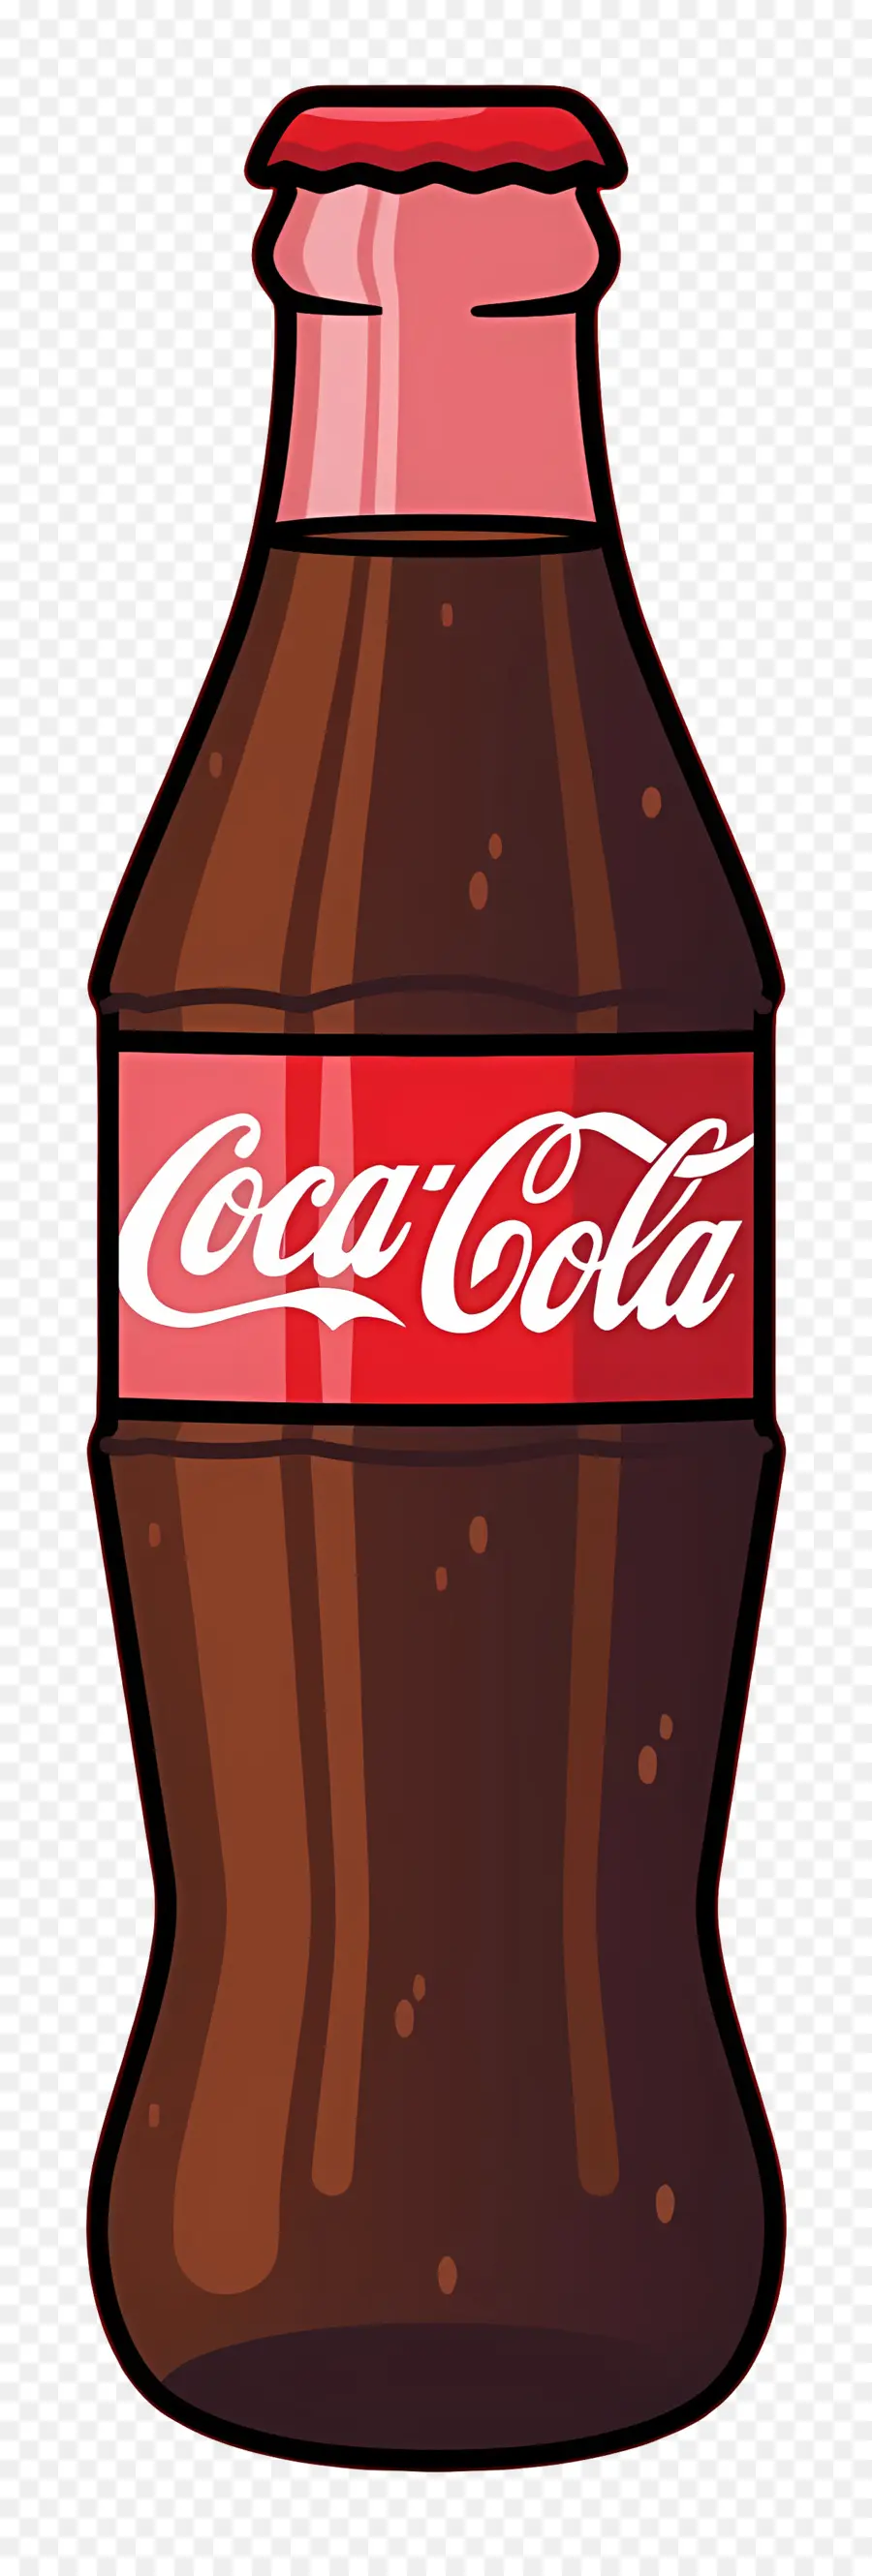 logo della coca cola - Bottiglia di coca cola marrone con cappuccio rosso